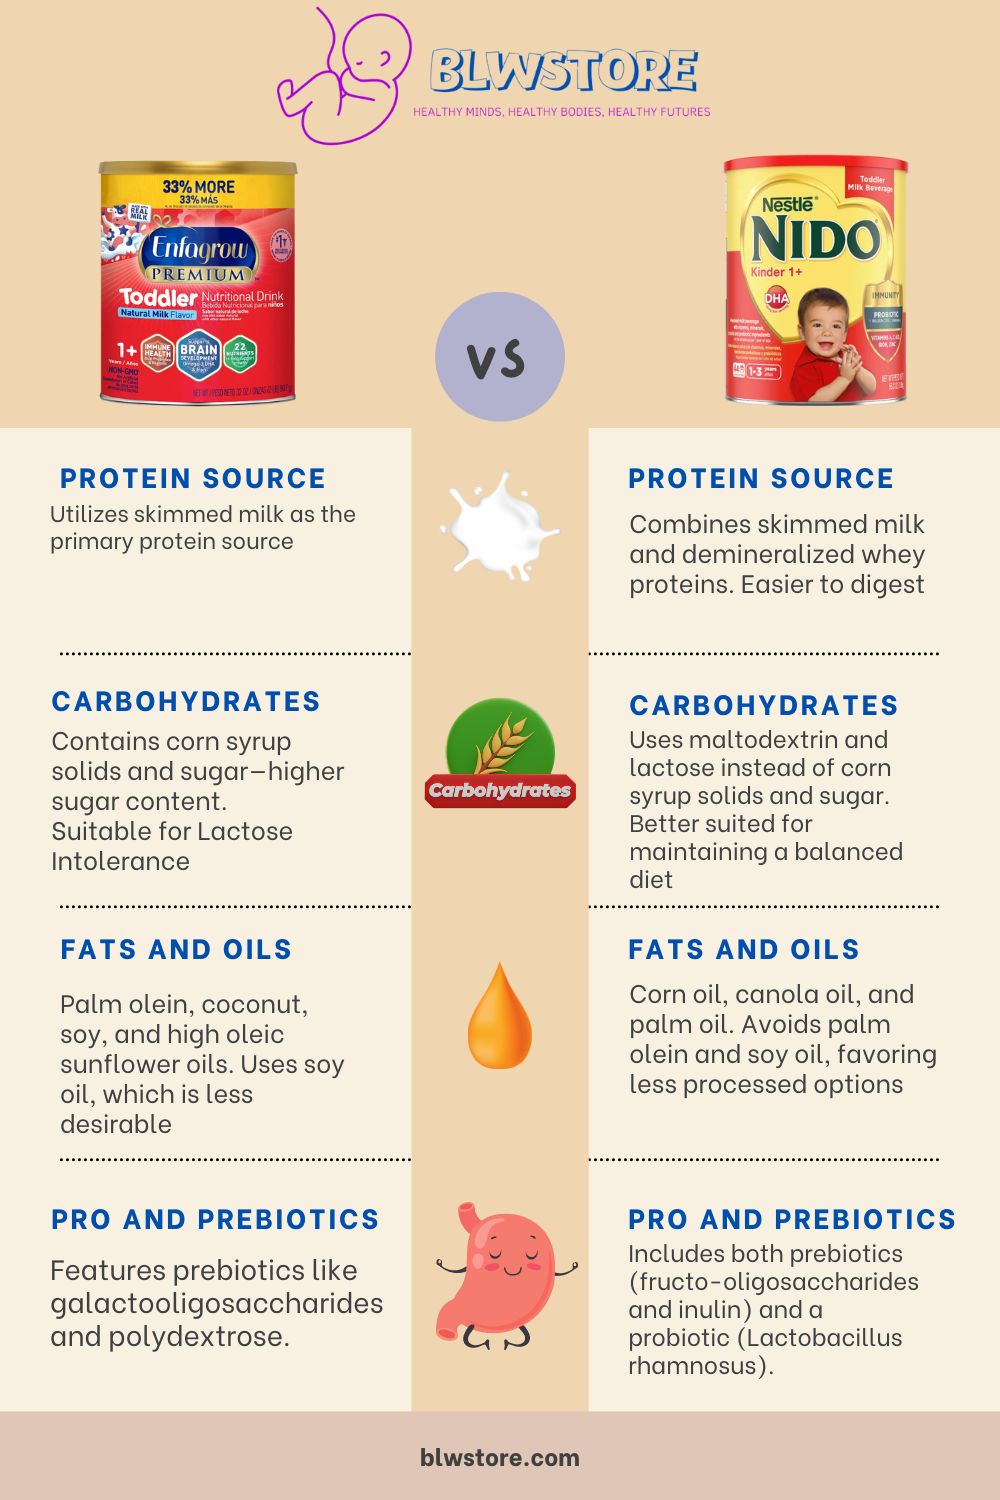 Enfagrow vs NIDO Nestlé Infographic